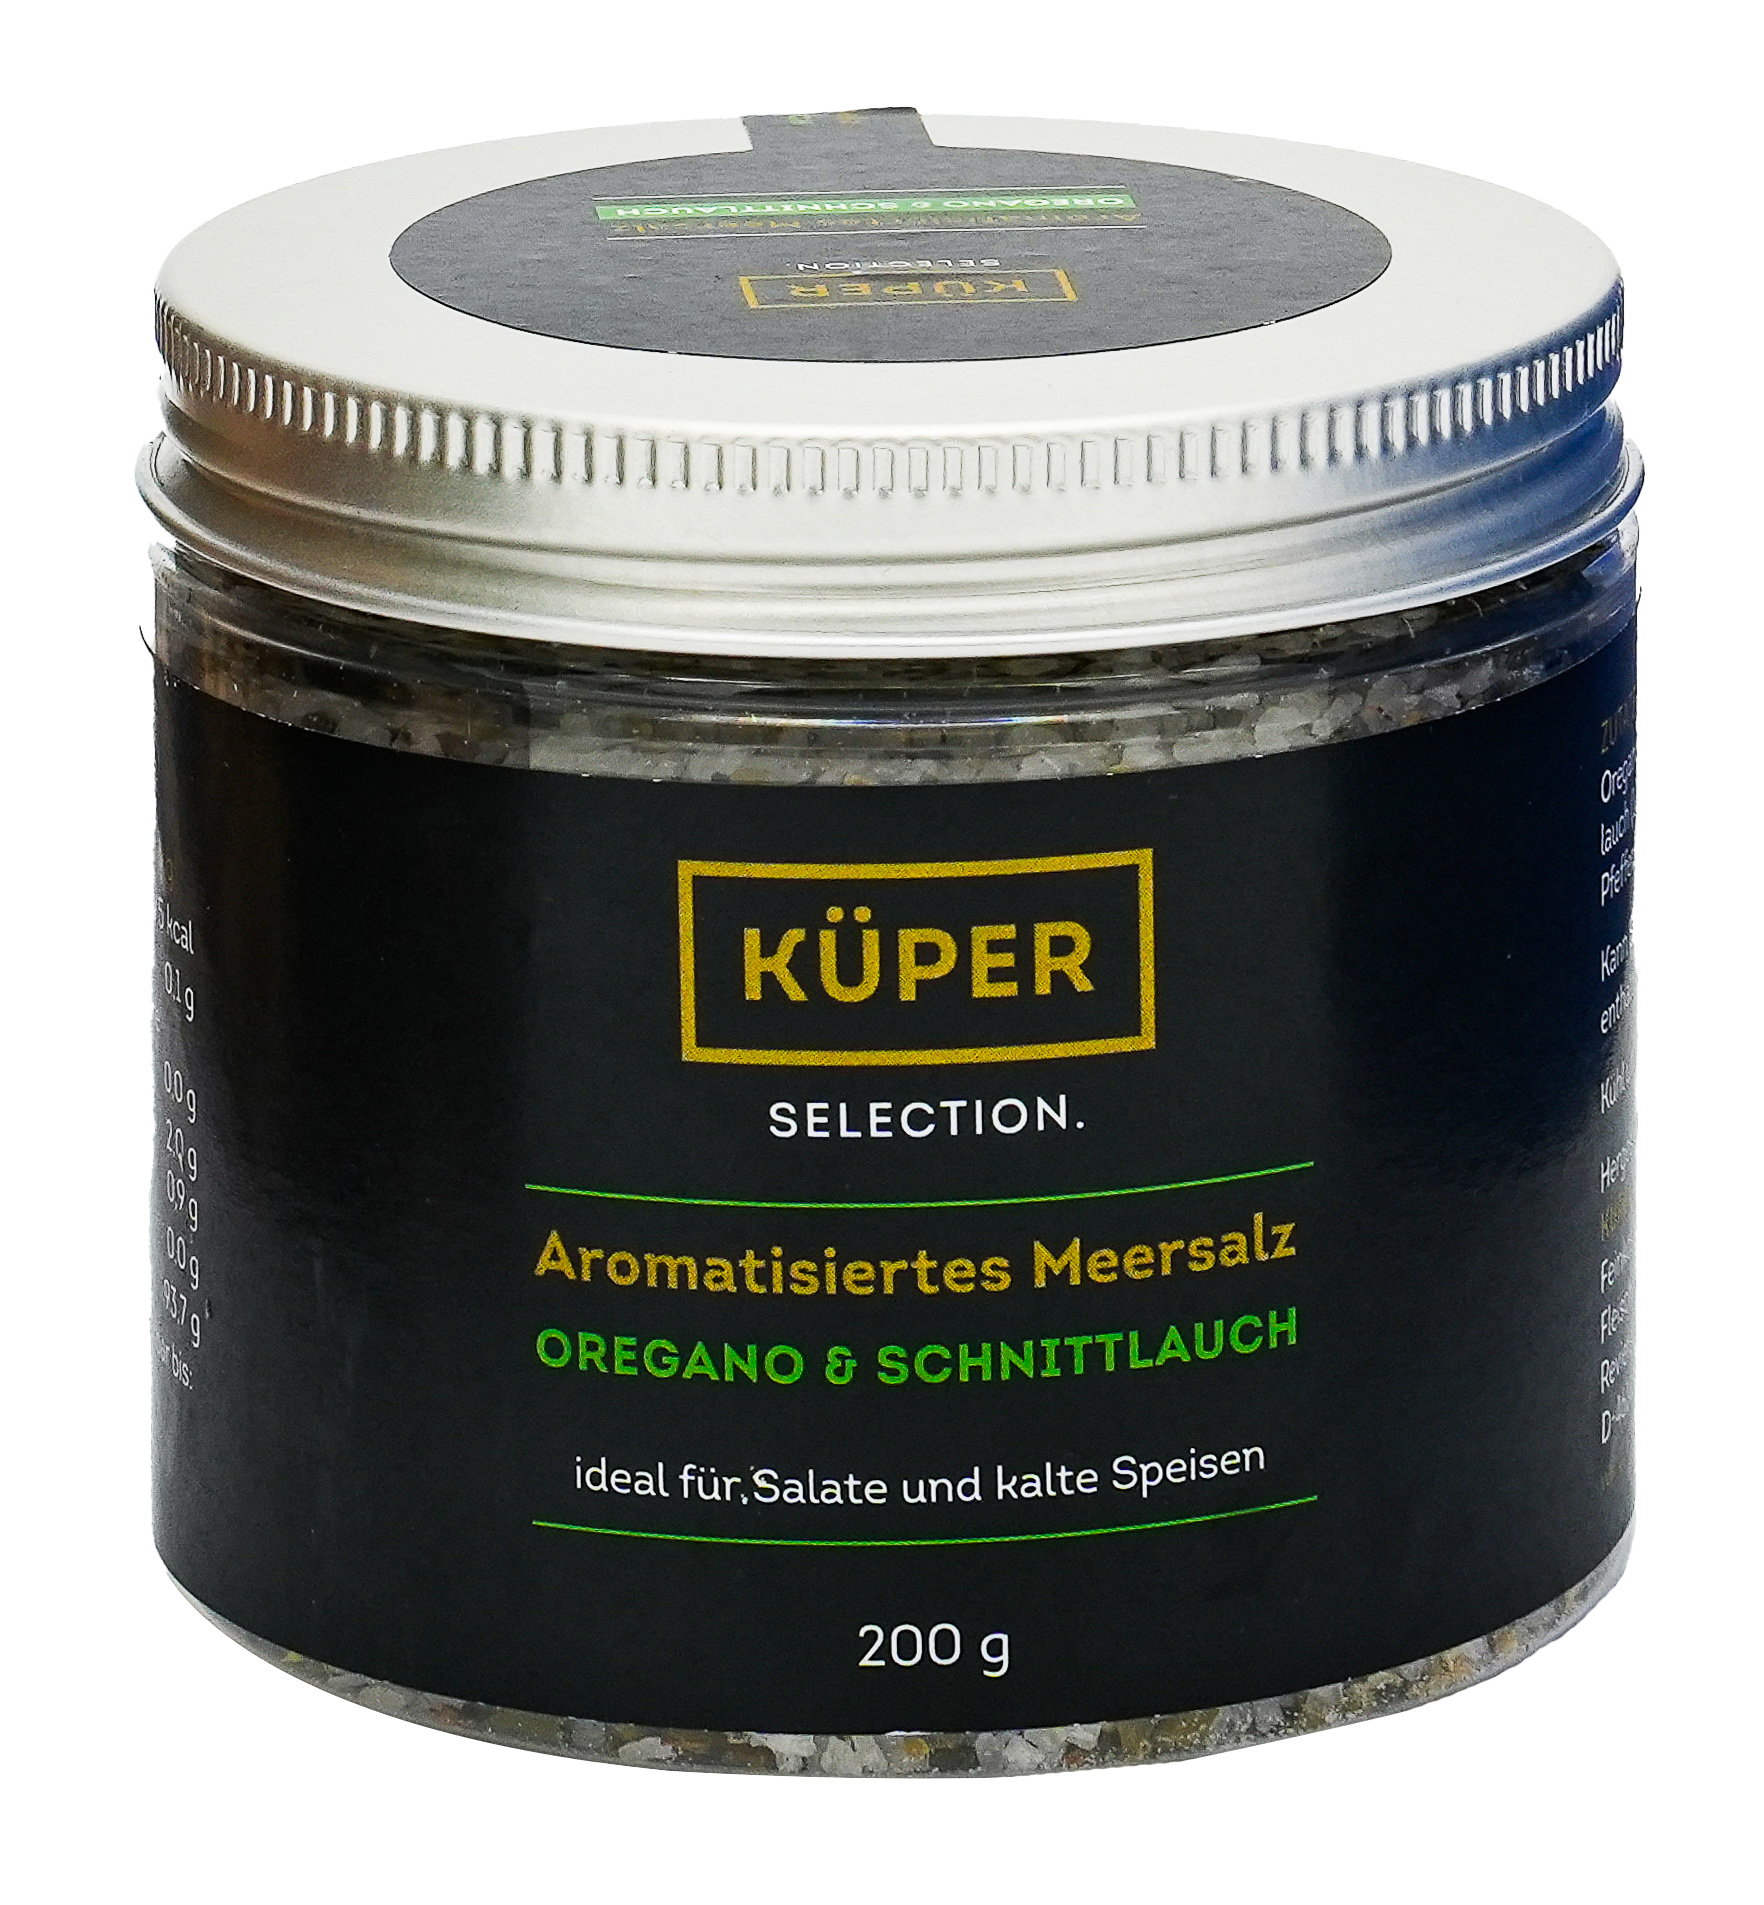 Küper Selection – 200g Aromatisiertes Meersalz mit 1,4% Oregano, 1% Schnittlauch, schwarzem Pfeffer und Knoblauch in grober Körnung